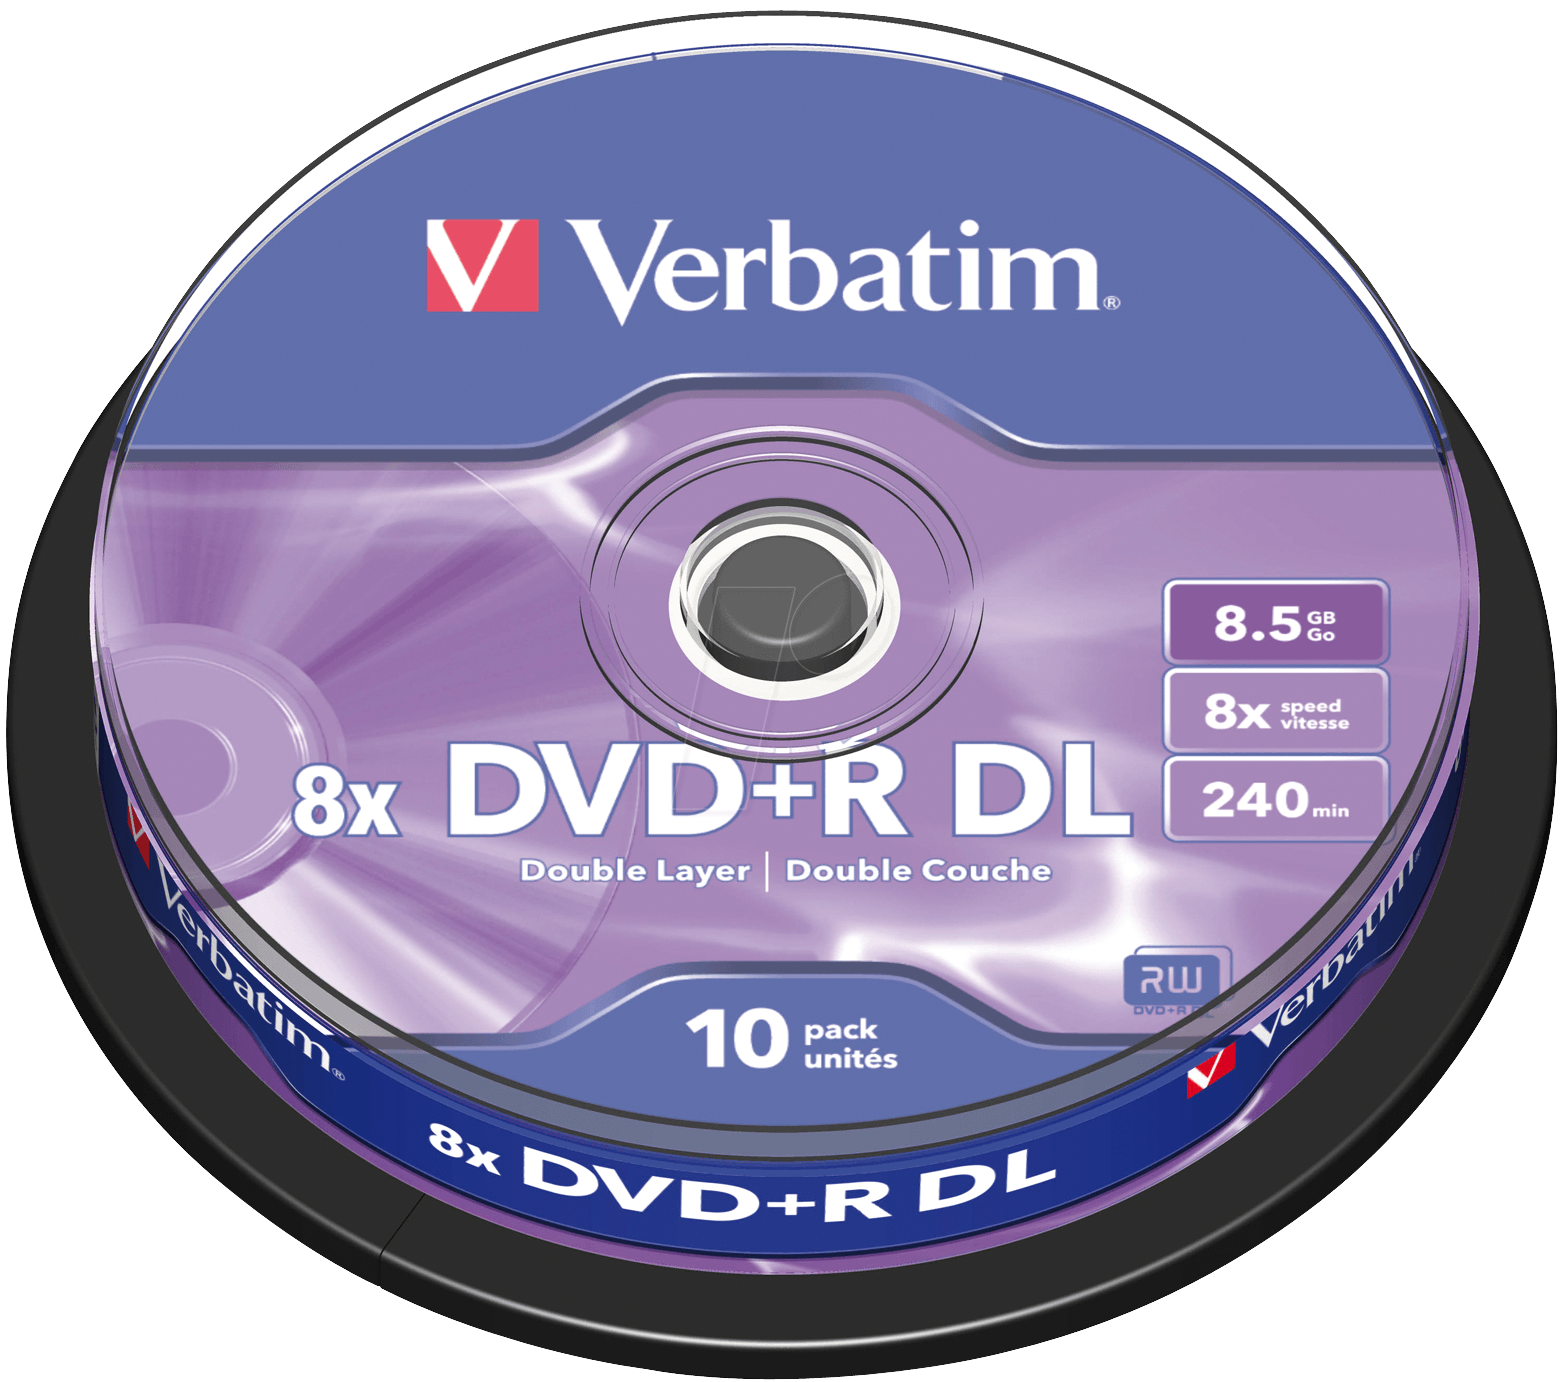 DVD+R8,5 VER10 - DVD+R 8,5GB Double Layer, 10er Spindel von Verbatim